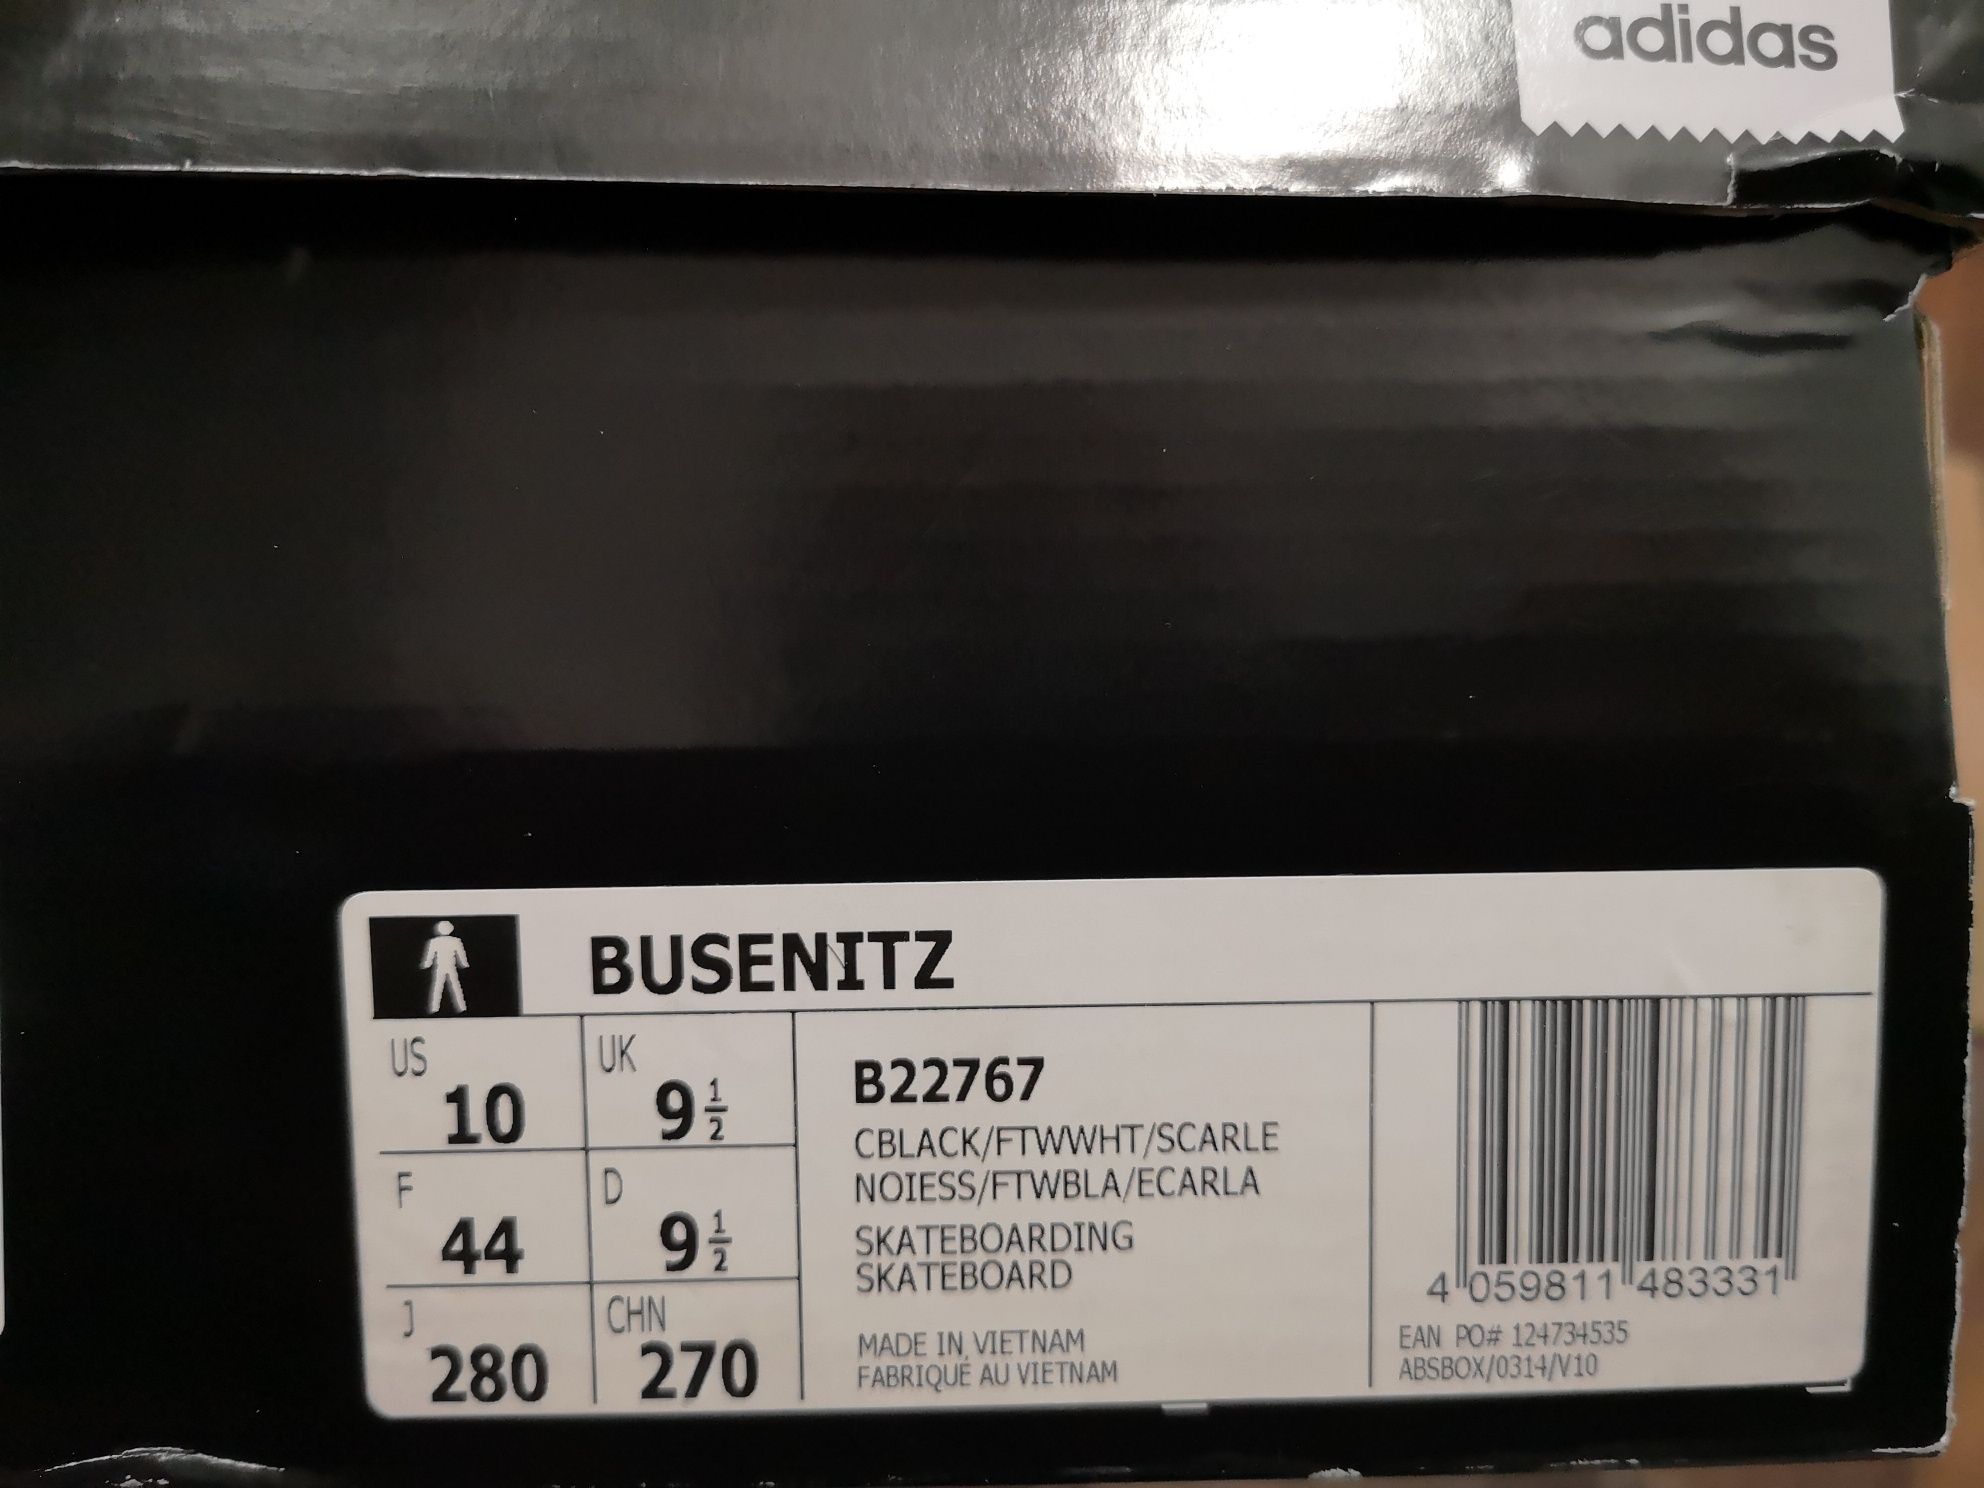 Adidas Originals Busenitz